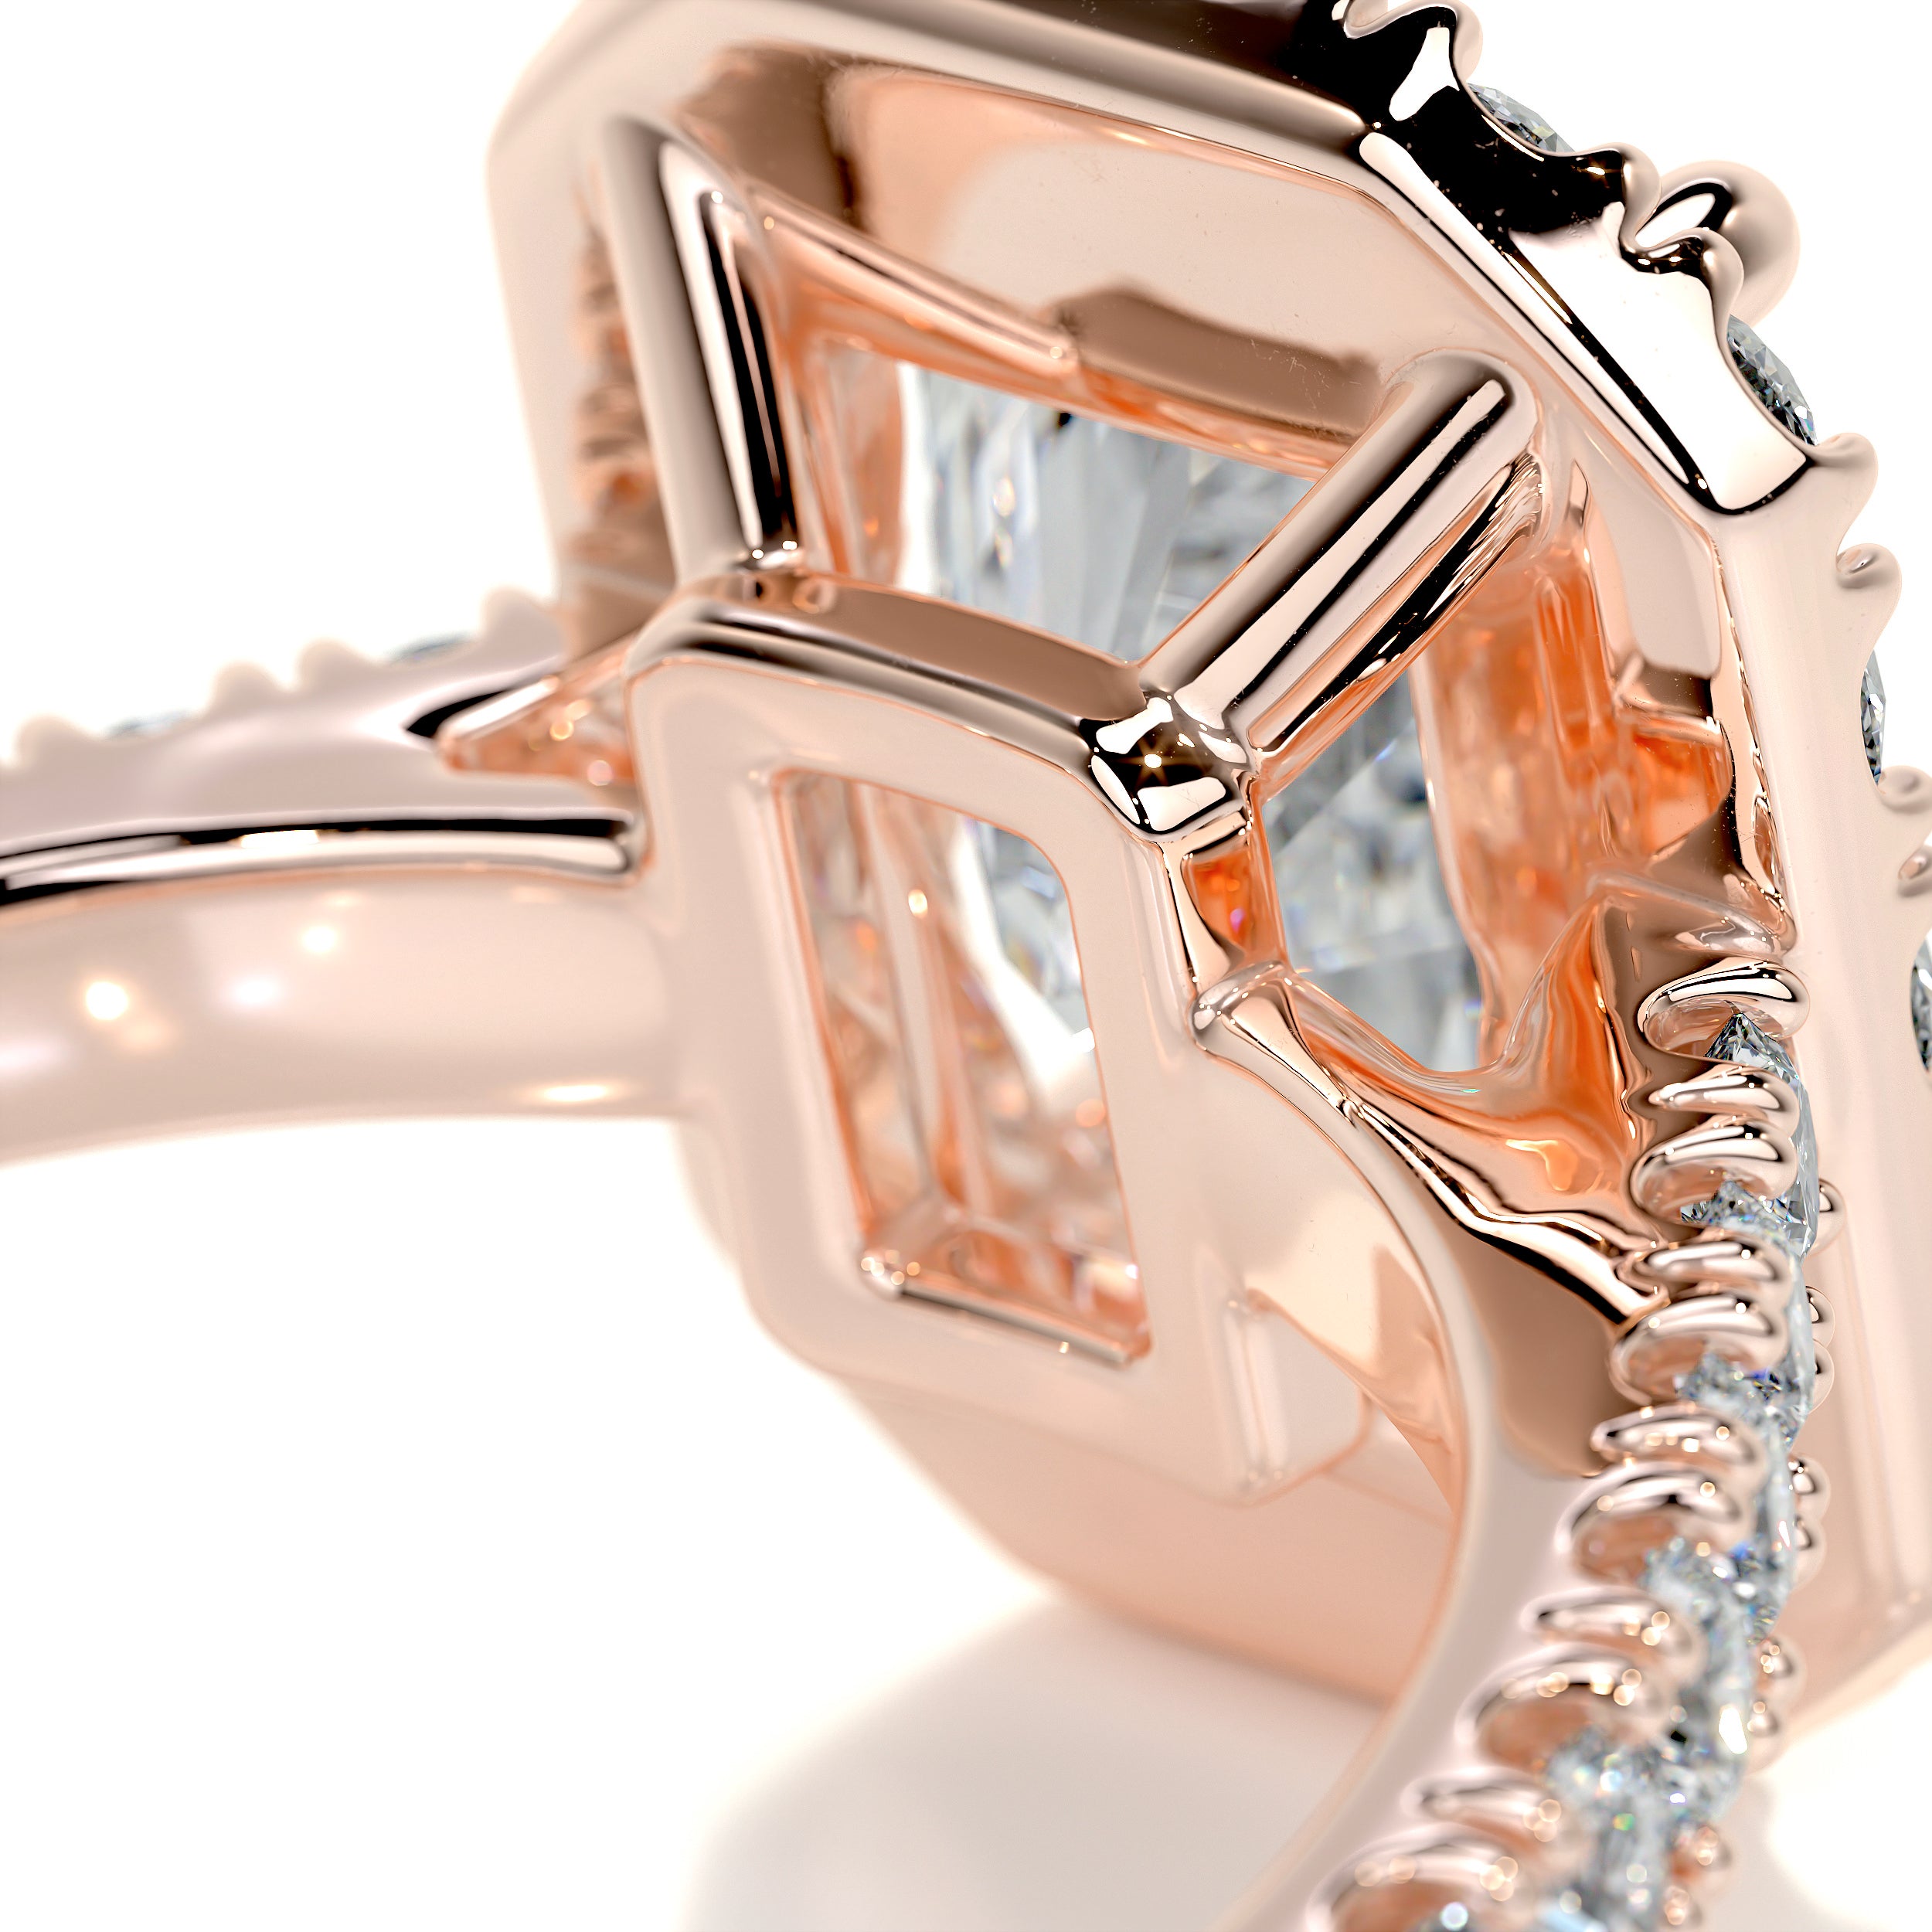 Andrea Moissanite & Diamonds Ring   (4.3 Carat) -14K Rose Gold